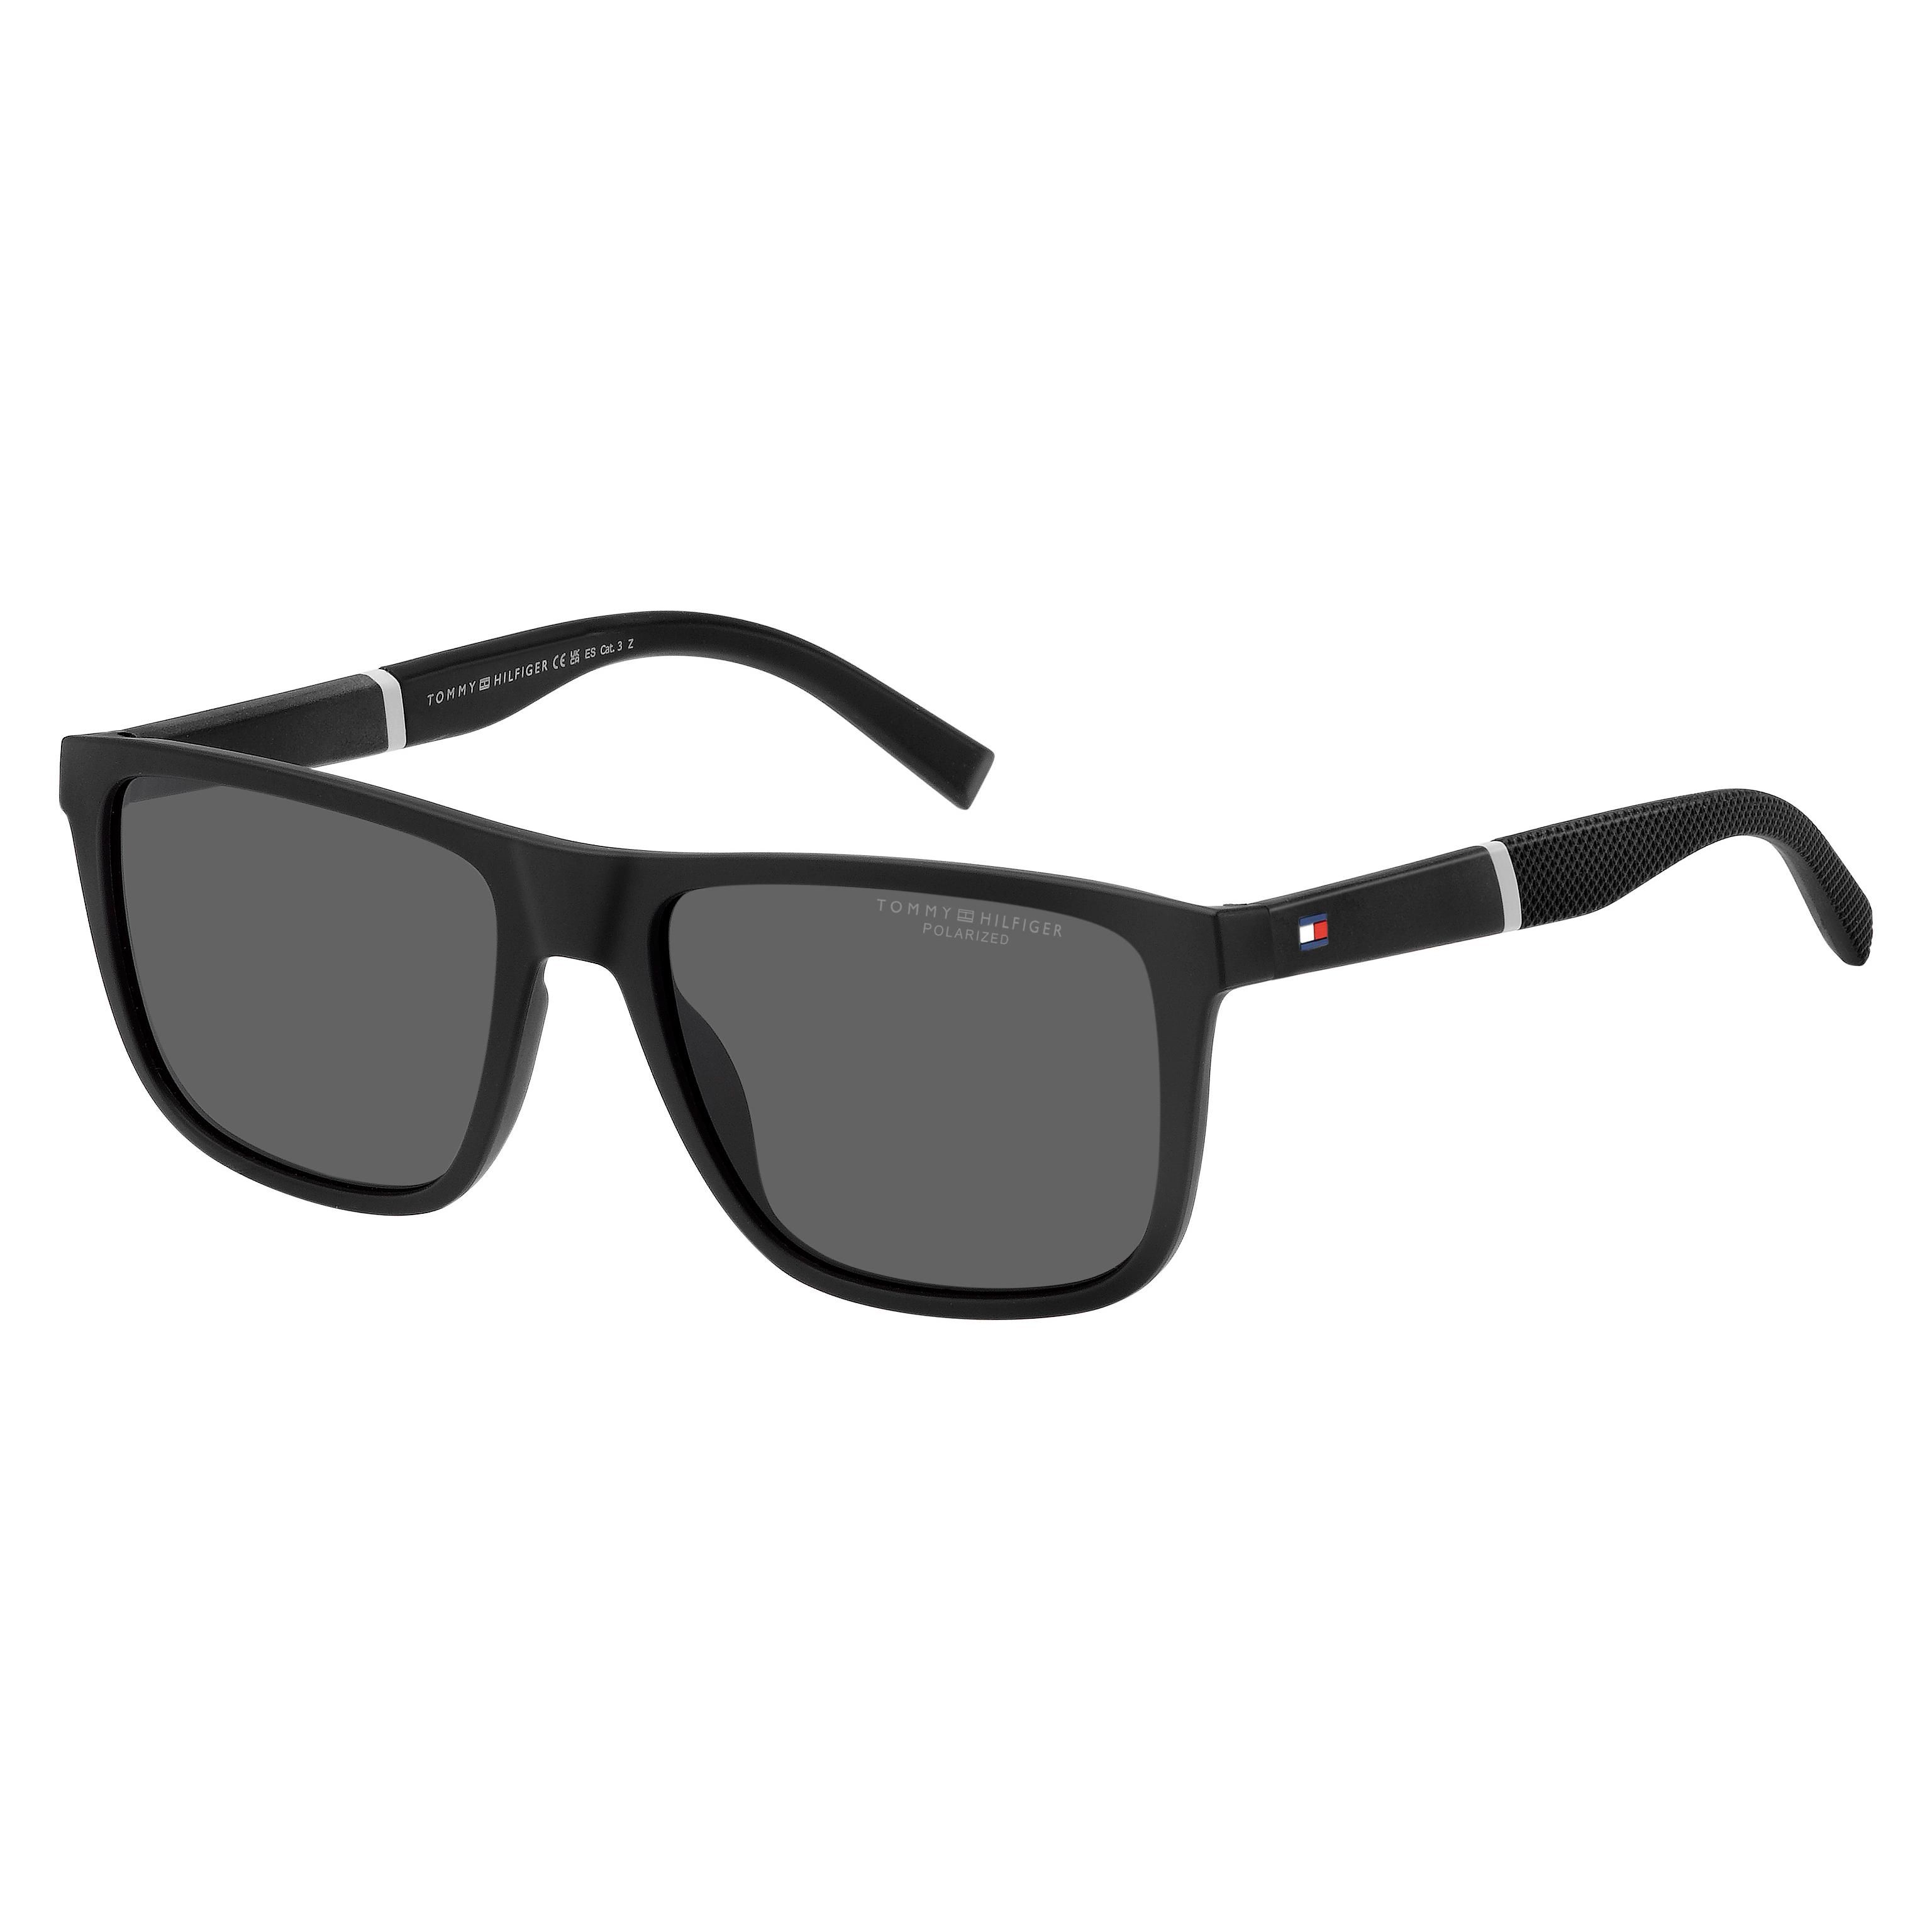 TH 2043 S Square Sunglasses 003 - size 56